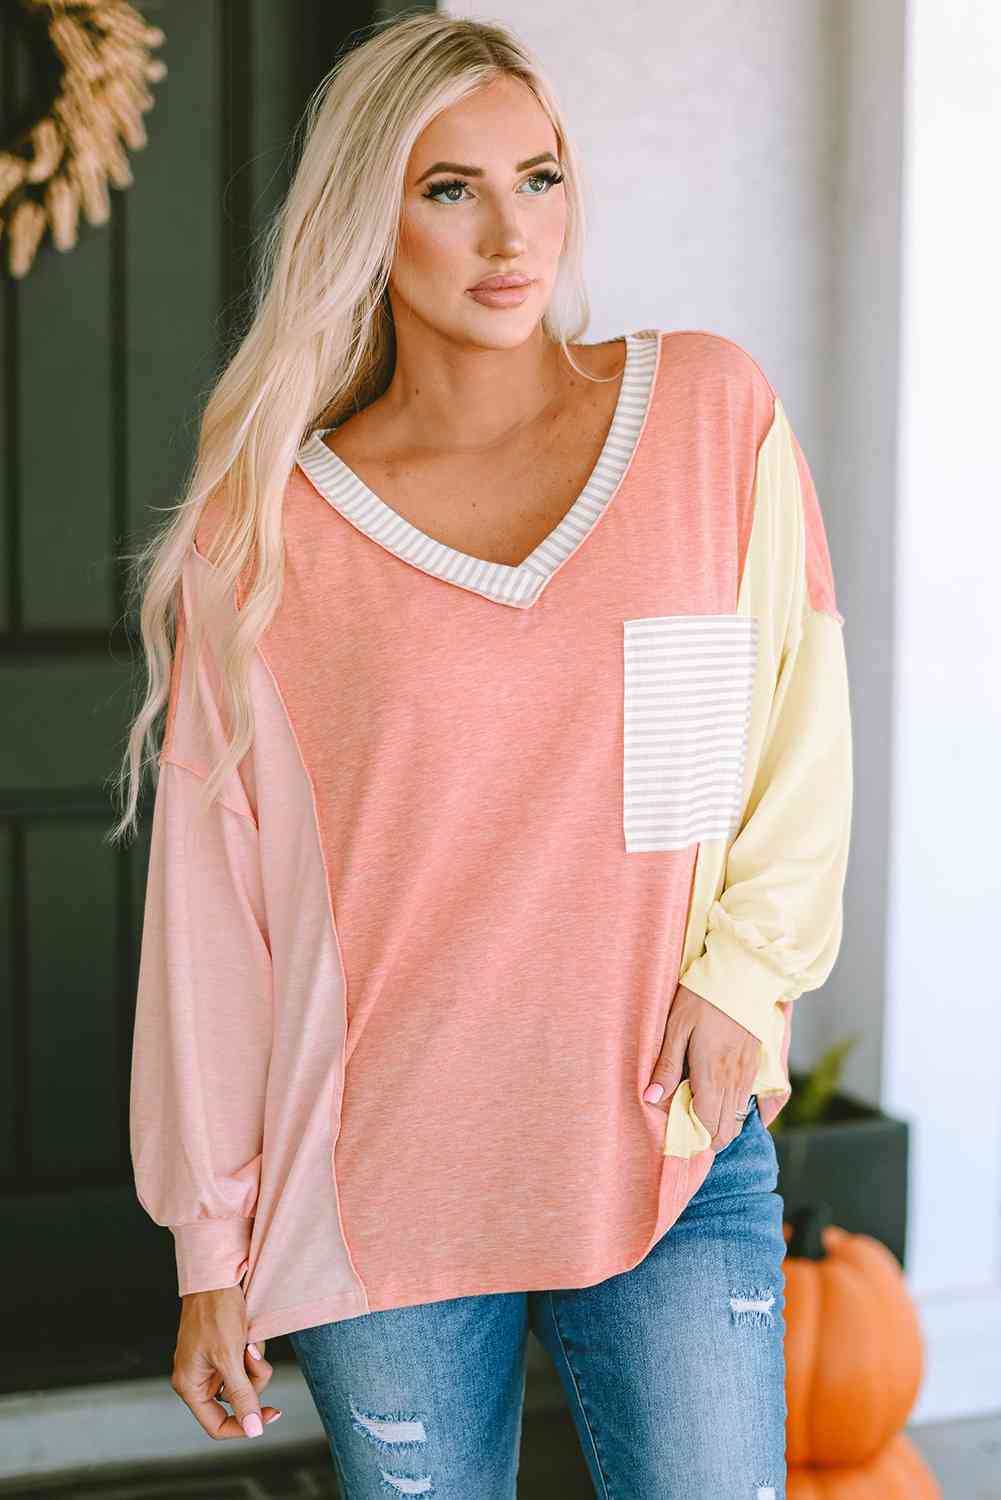 Color Block V-Neck Dropped Shoulder Sweatshirt with Pocket Shirts & Tops Krazy Heart Designs Boutique   